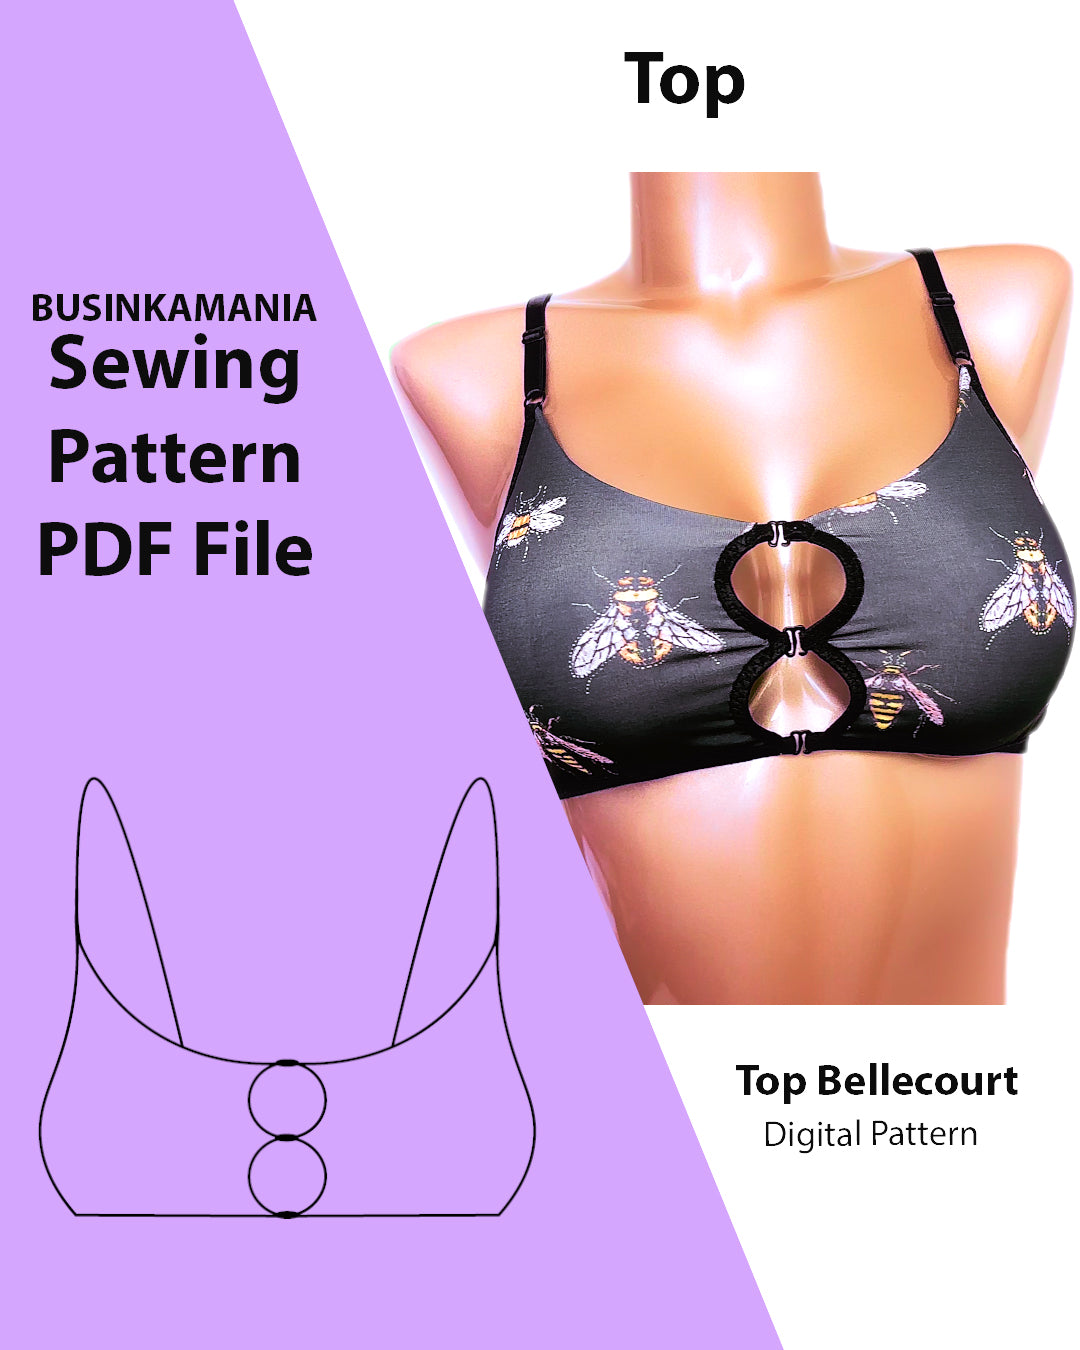 Top Bellecourt Sewing Pattern